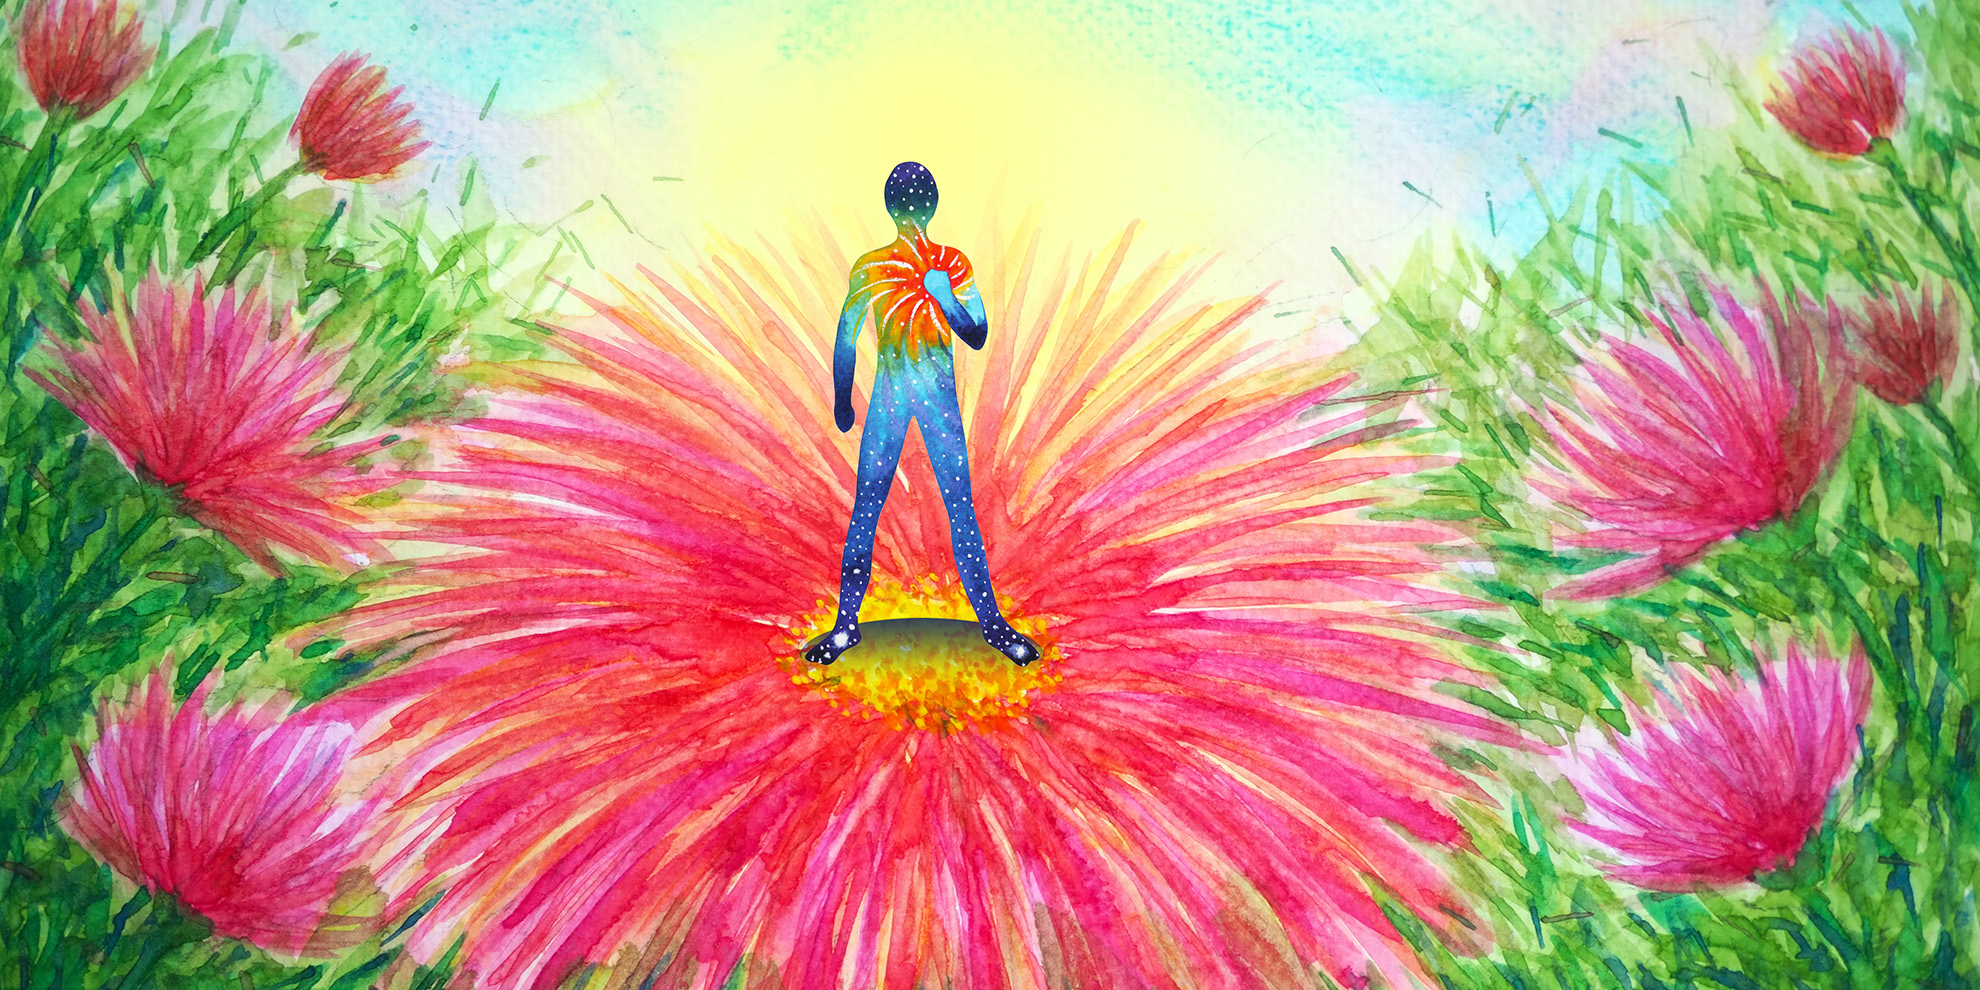 Visual van bloemen met staande persoon in chakra kleuren